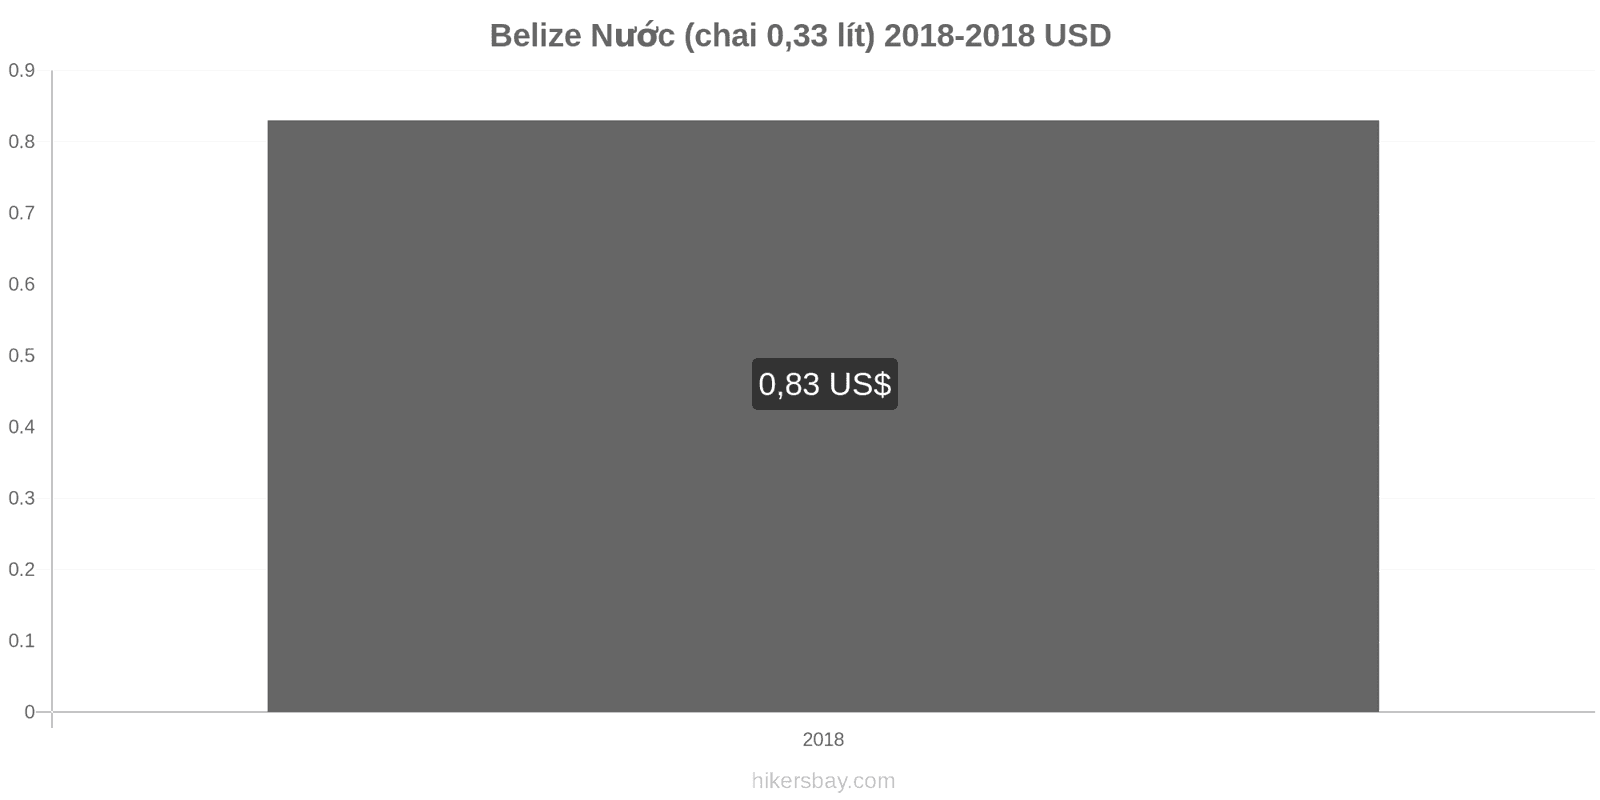 Belize thay đổi giá cả Nước (chai 0.33 lít) hikersbay.com